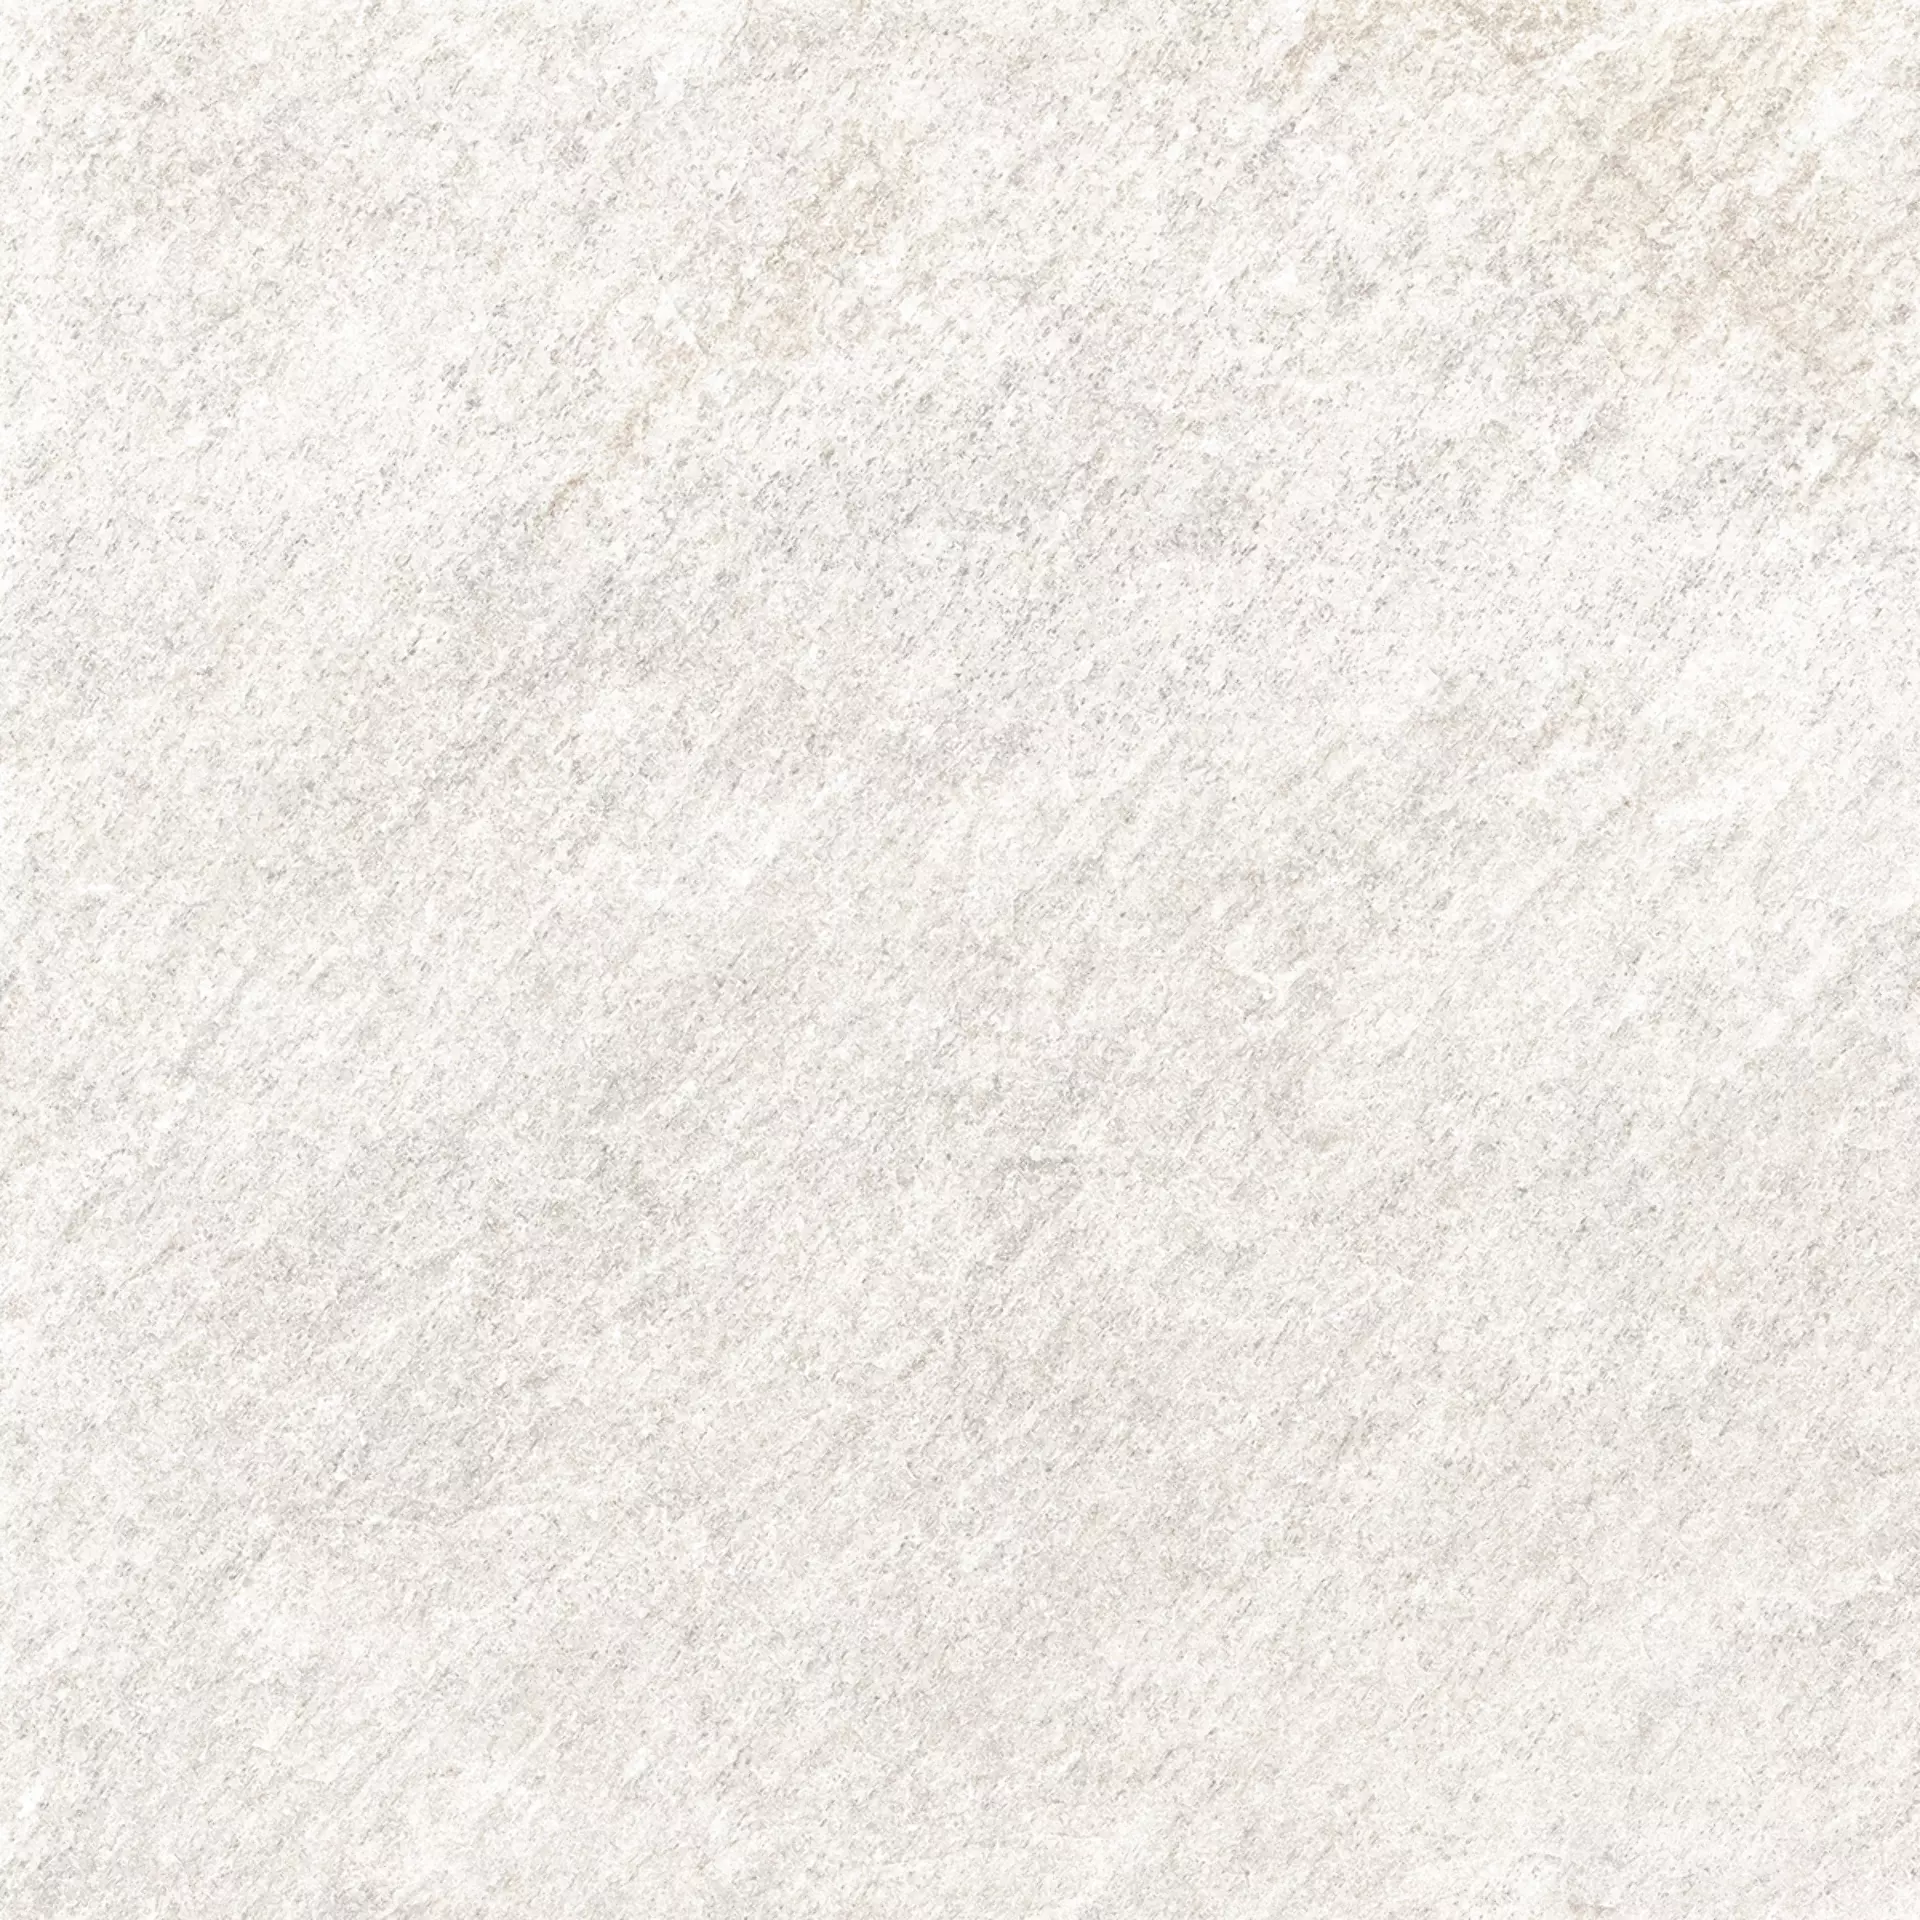 Rondine Quarzi White Naturale J87388 20,3x20,3cm 9mm